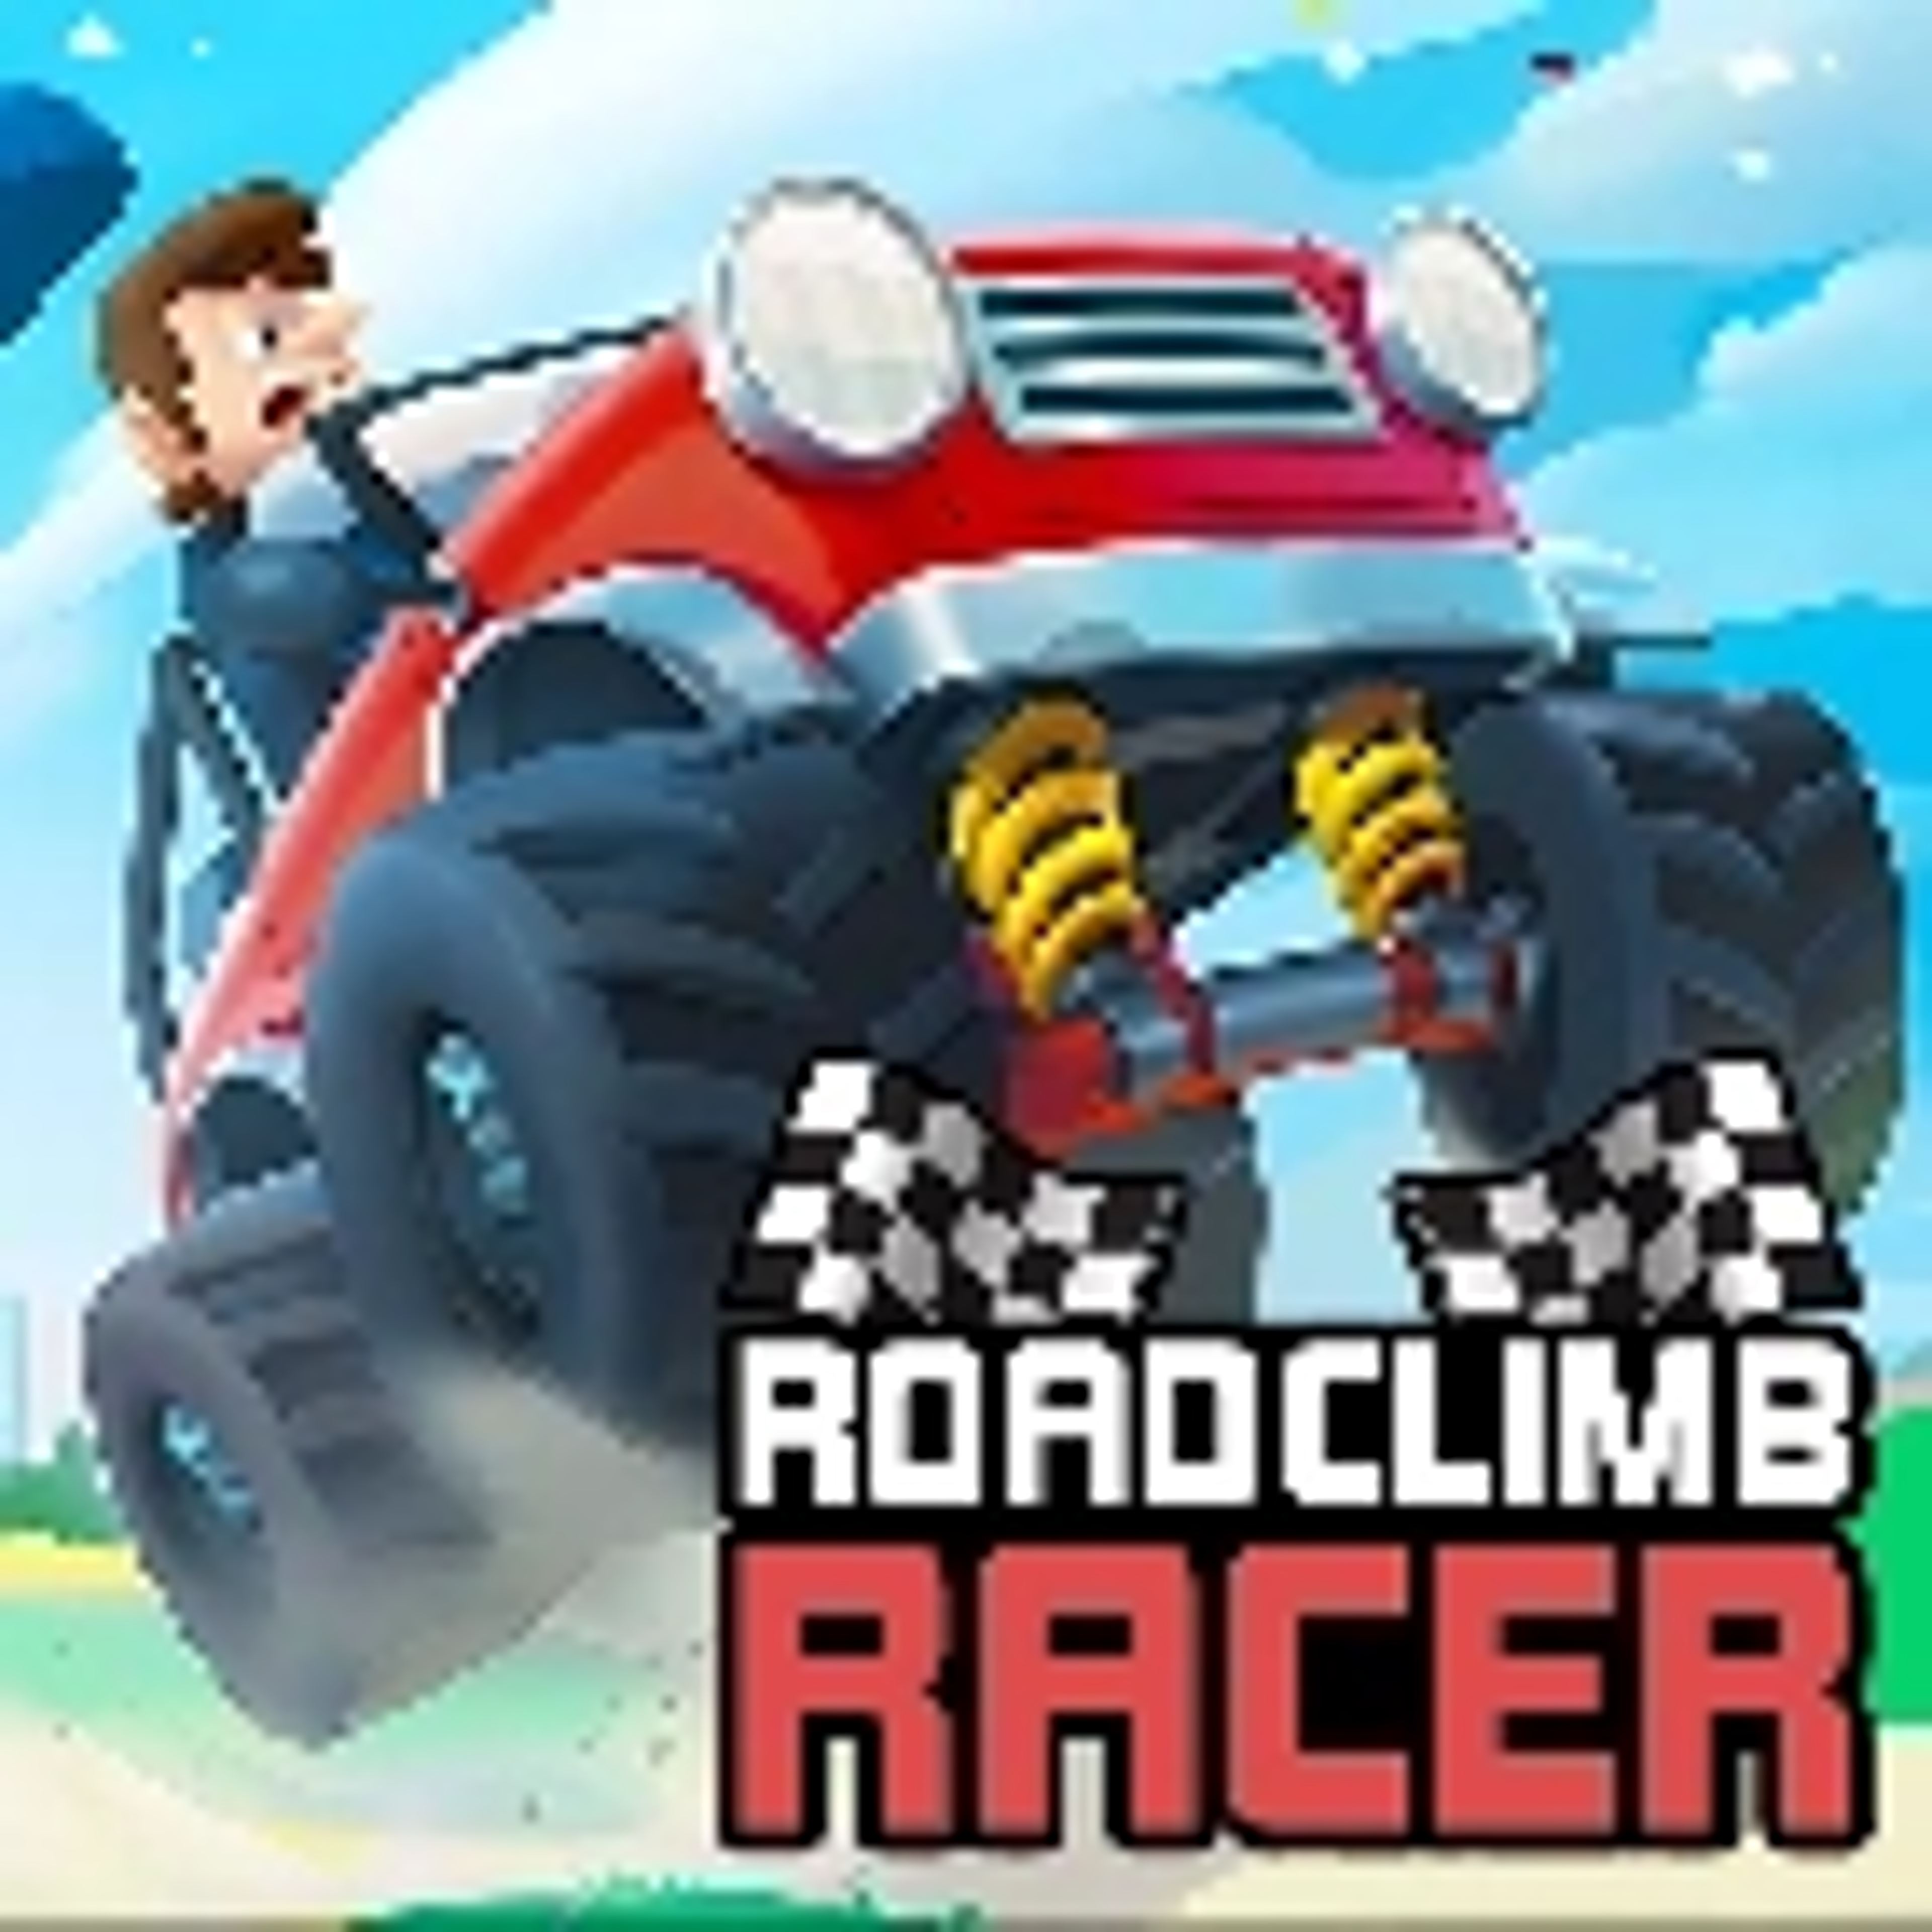 Road Climb Racer